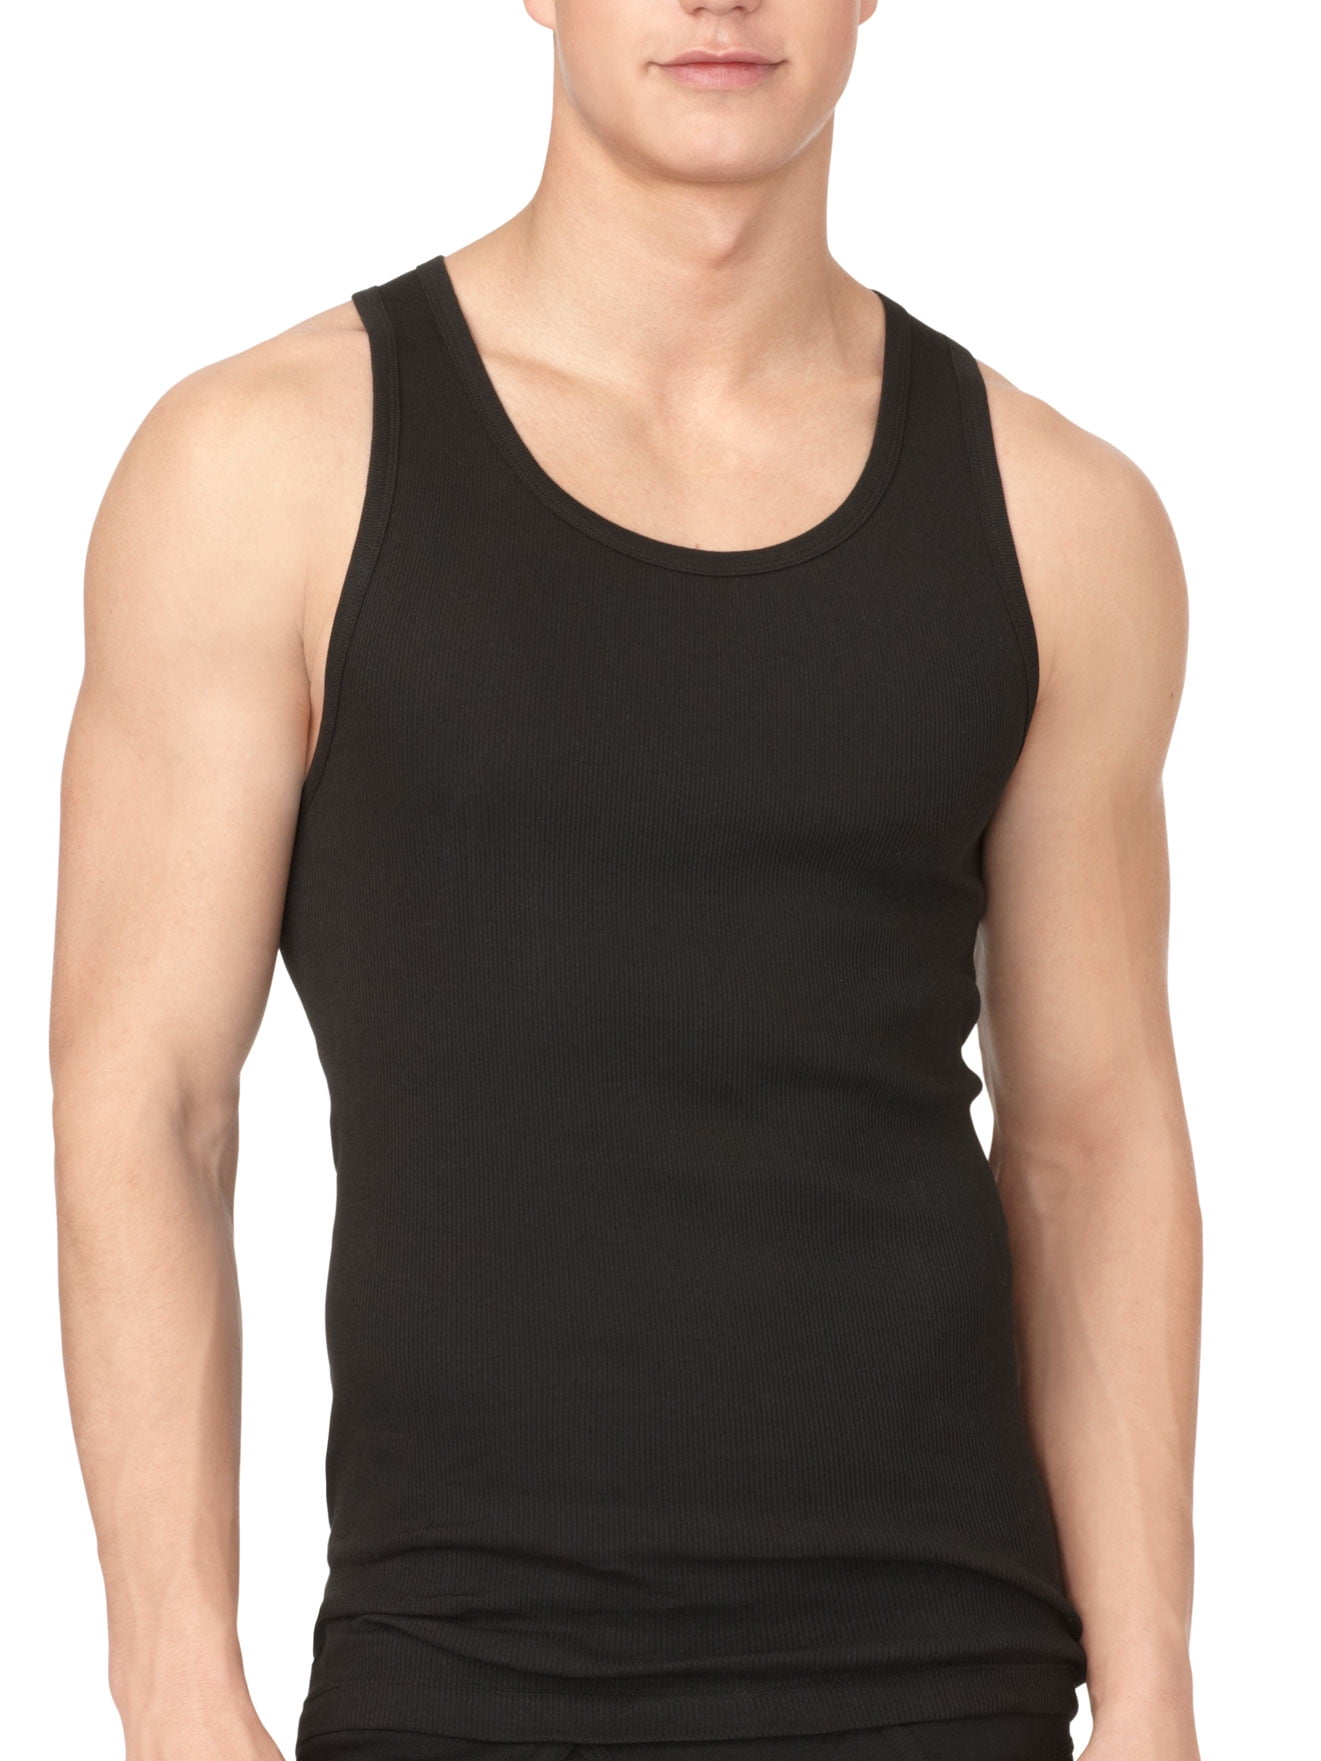 Calvin Klein Men's Cotton Rib Tank Top - 3 Pack, Black, XLarge 